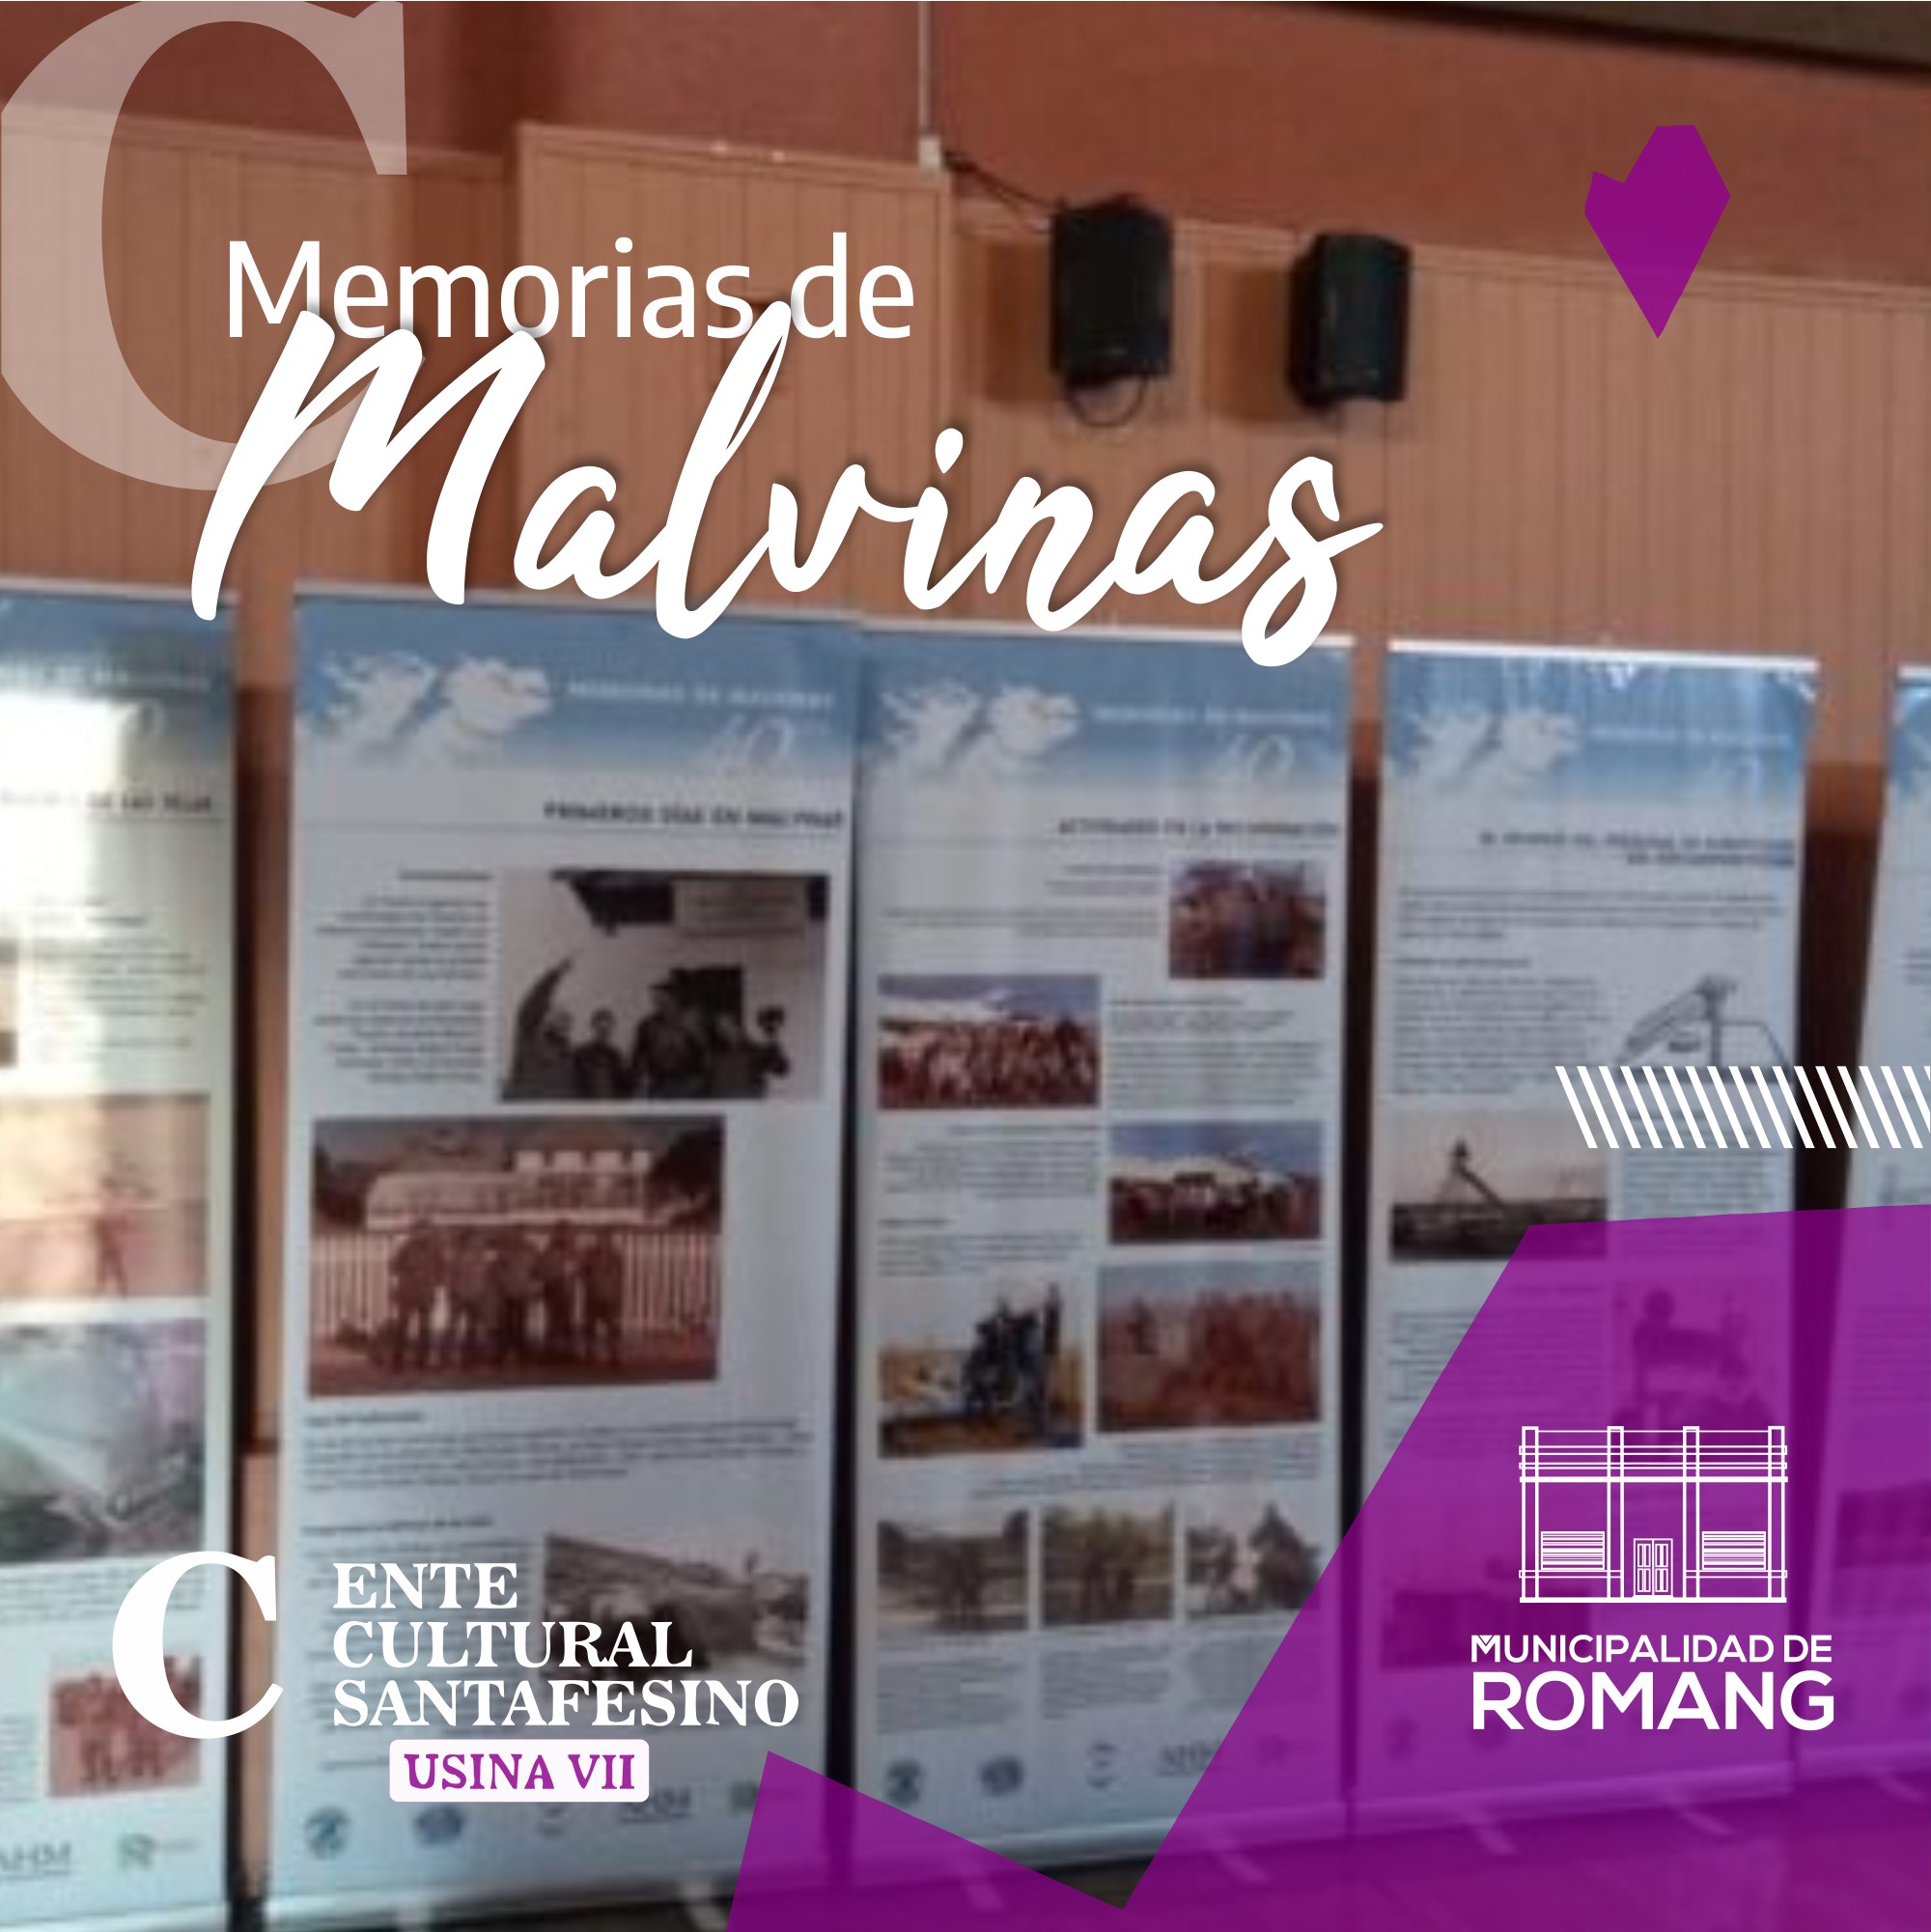 “Memorias de Malvinas” inicia su recorrido en la ciudad de Romang